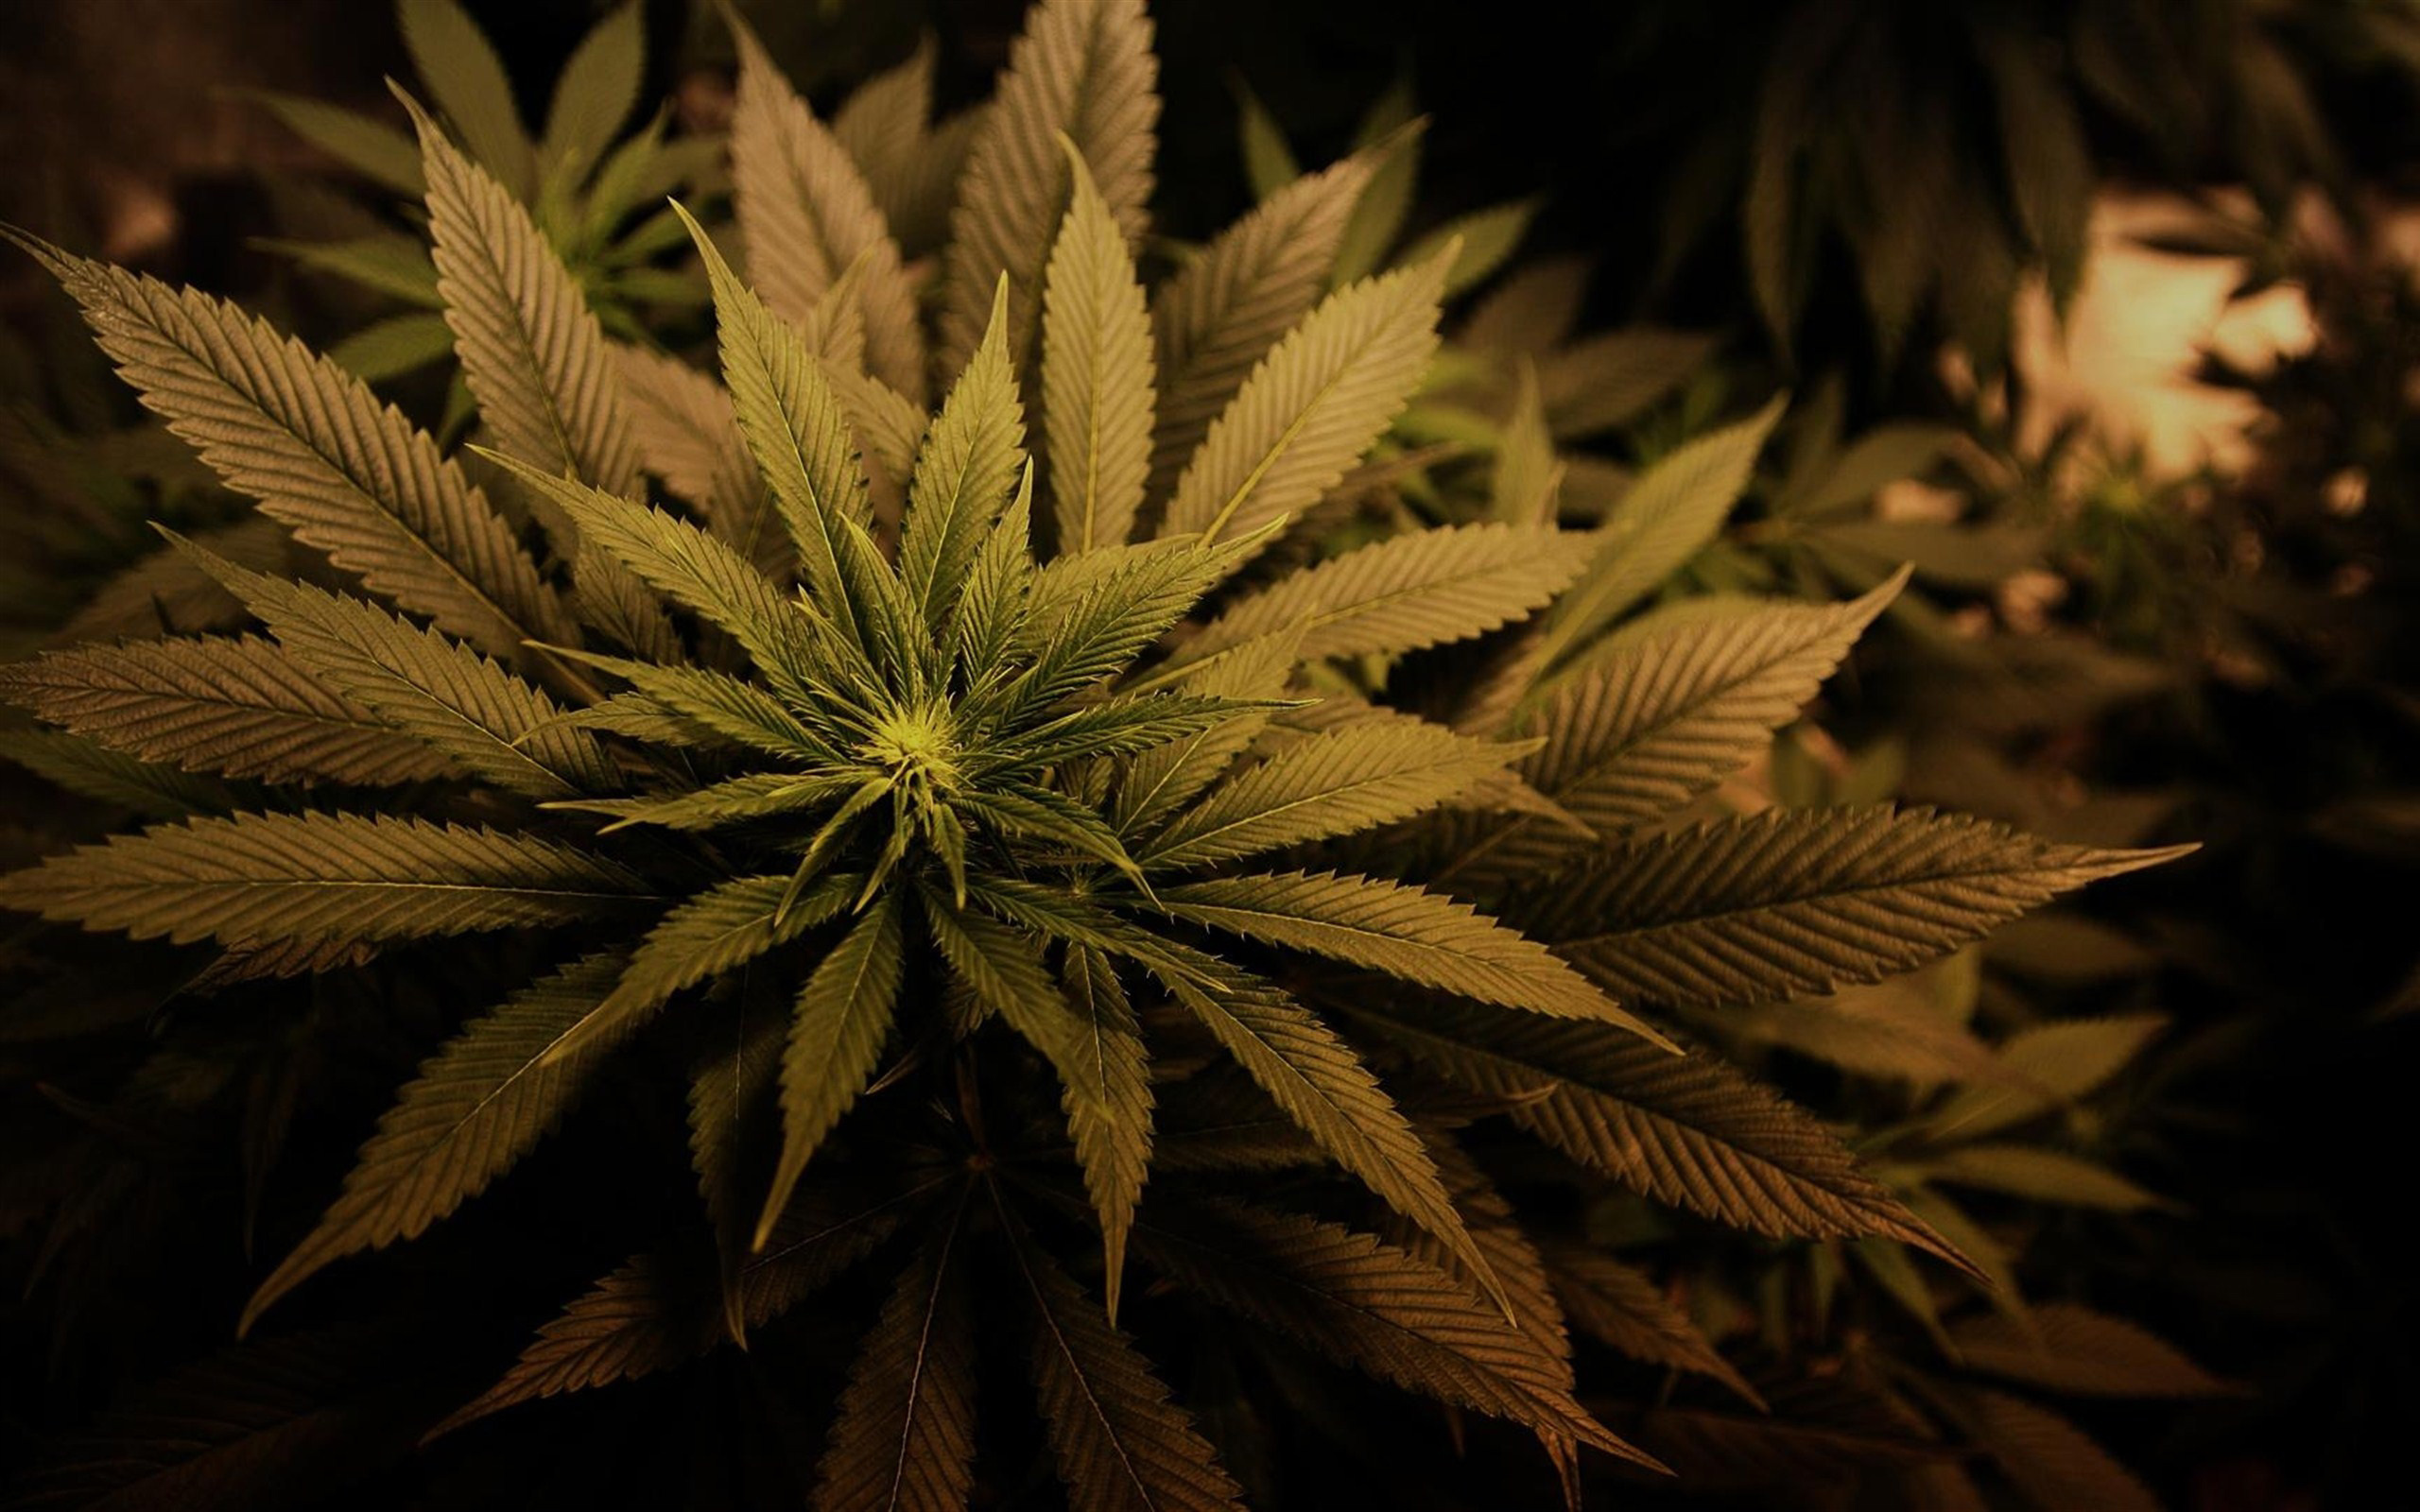 Картинка конопли в hd какая земля подходит для выращивания марихуаны